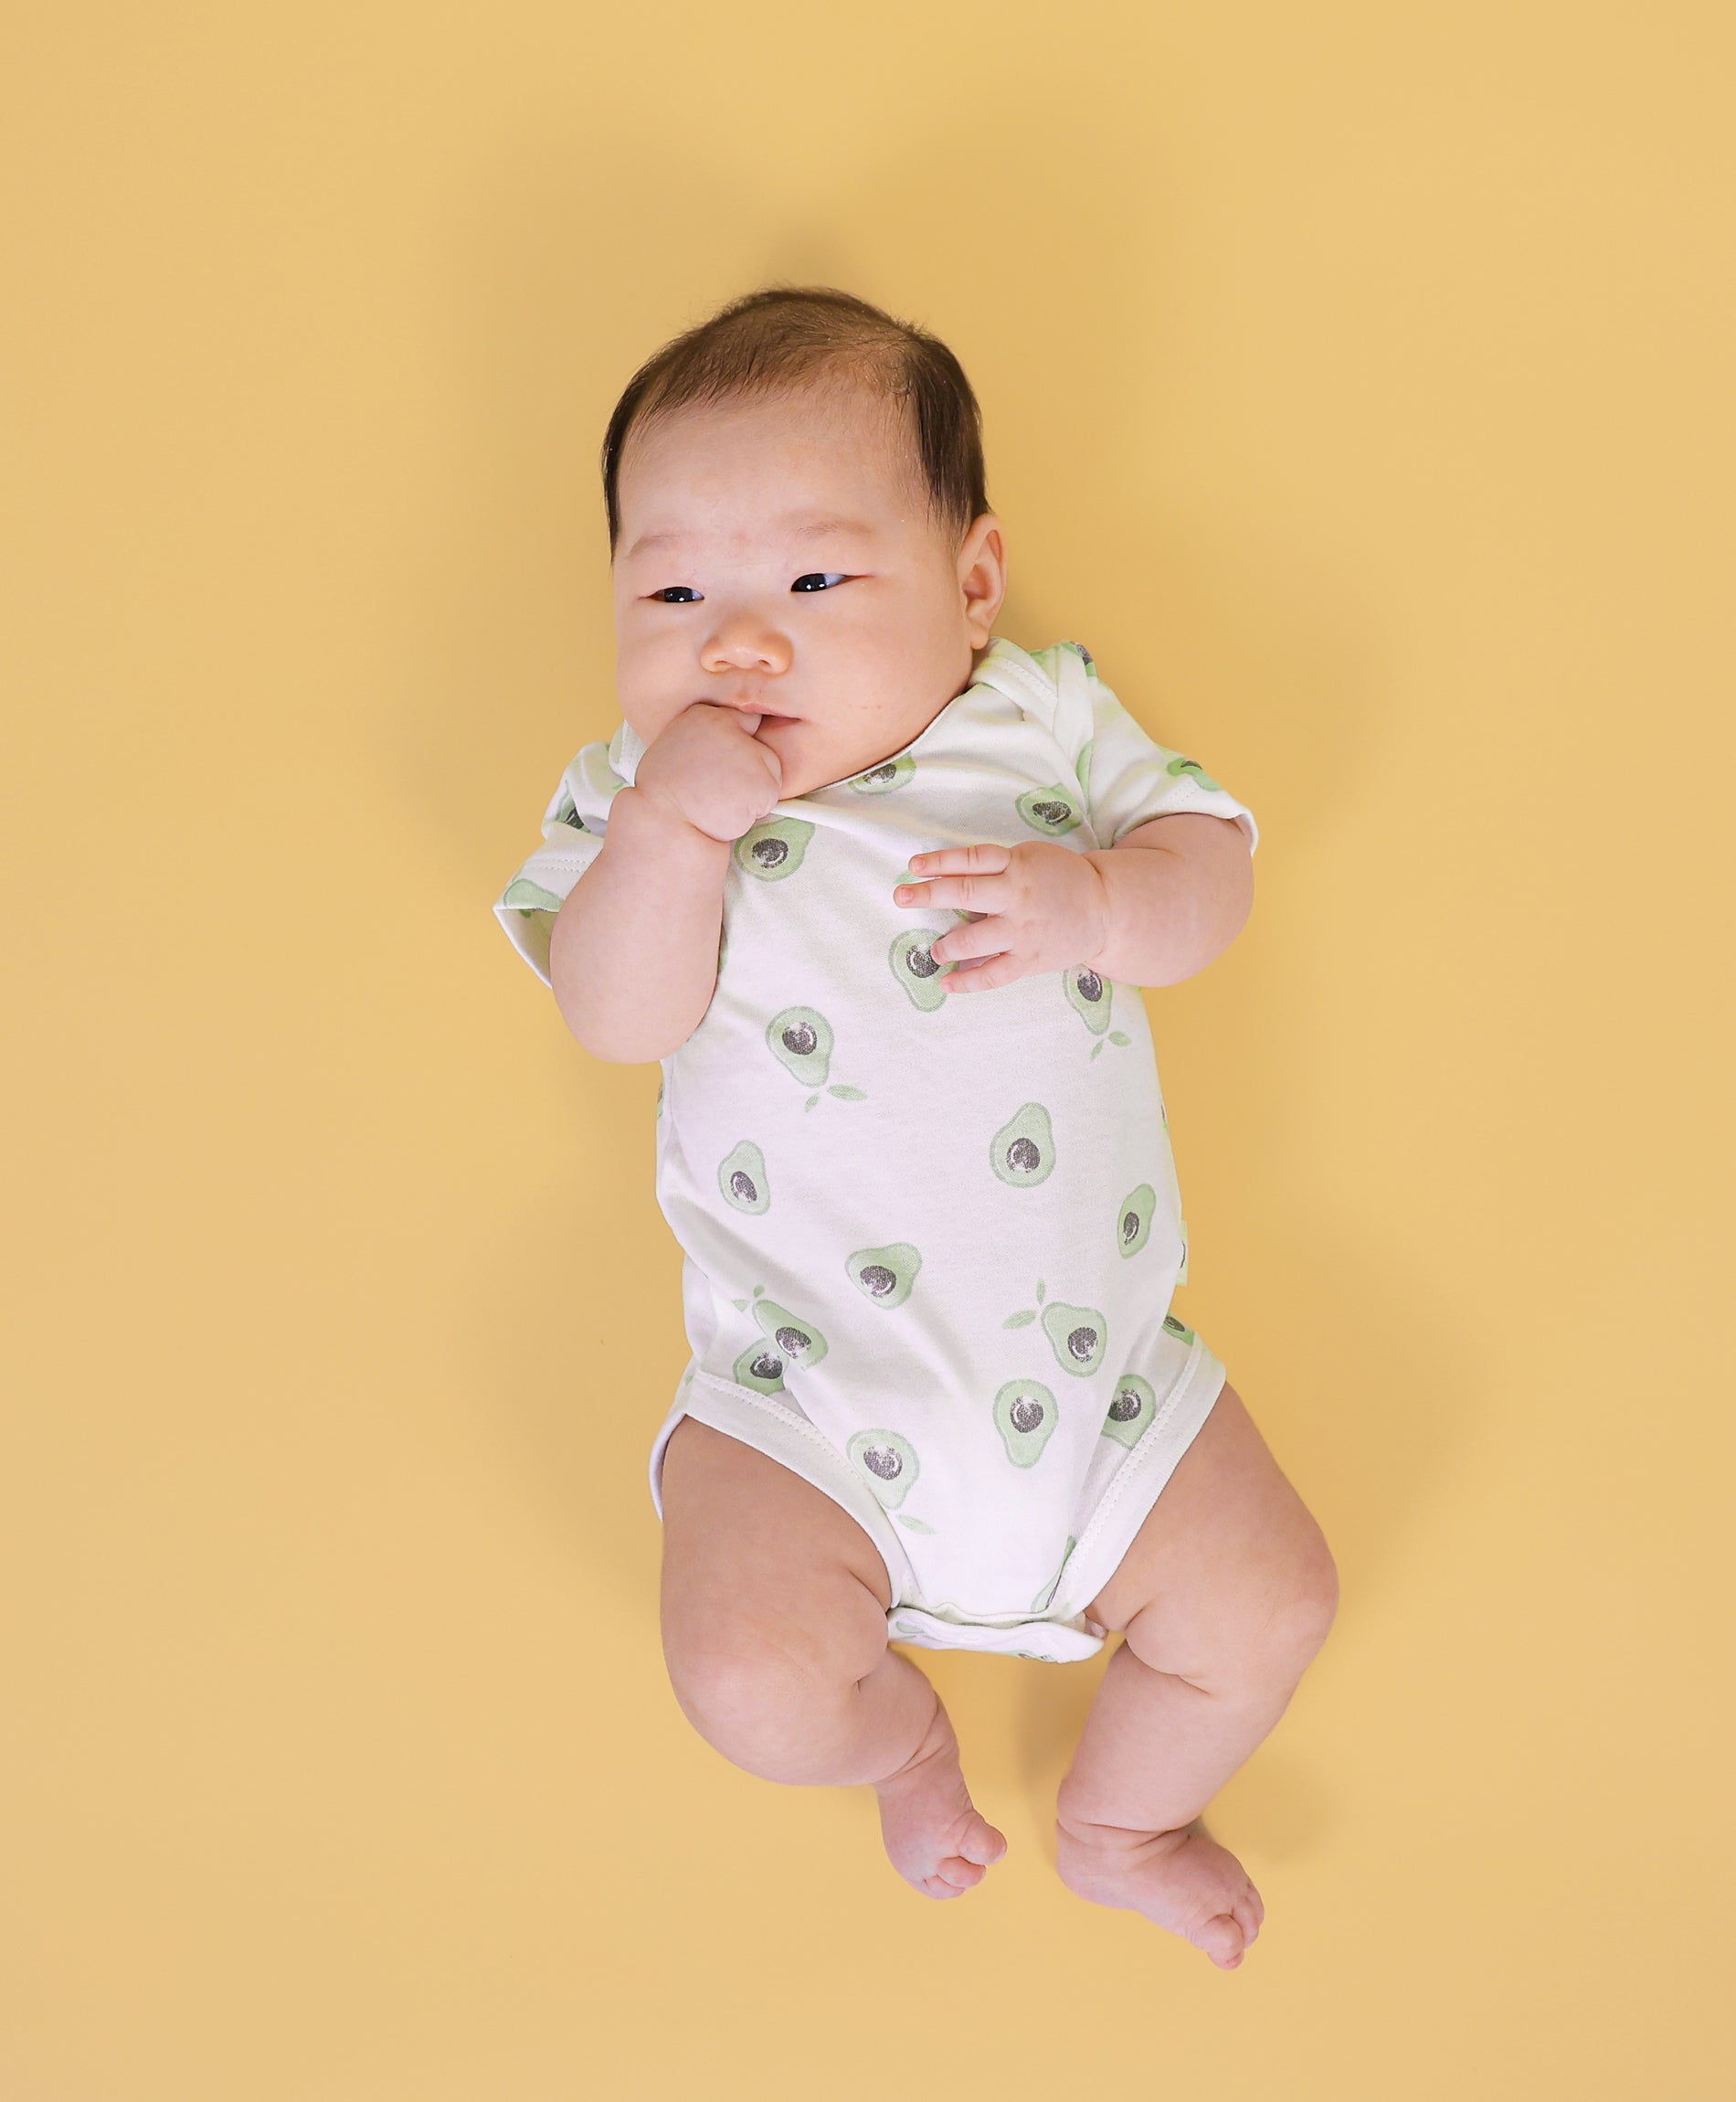 Short sleeve bodysuit baby - Avocados